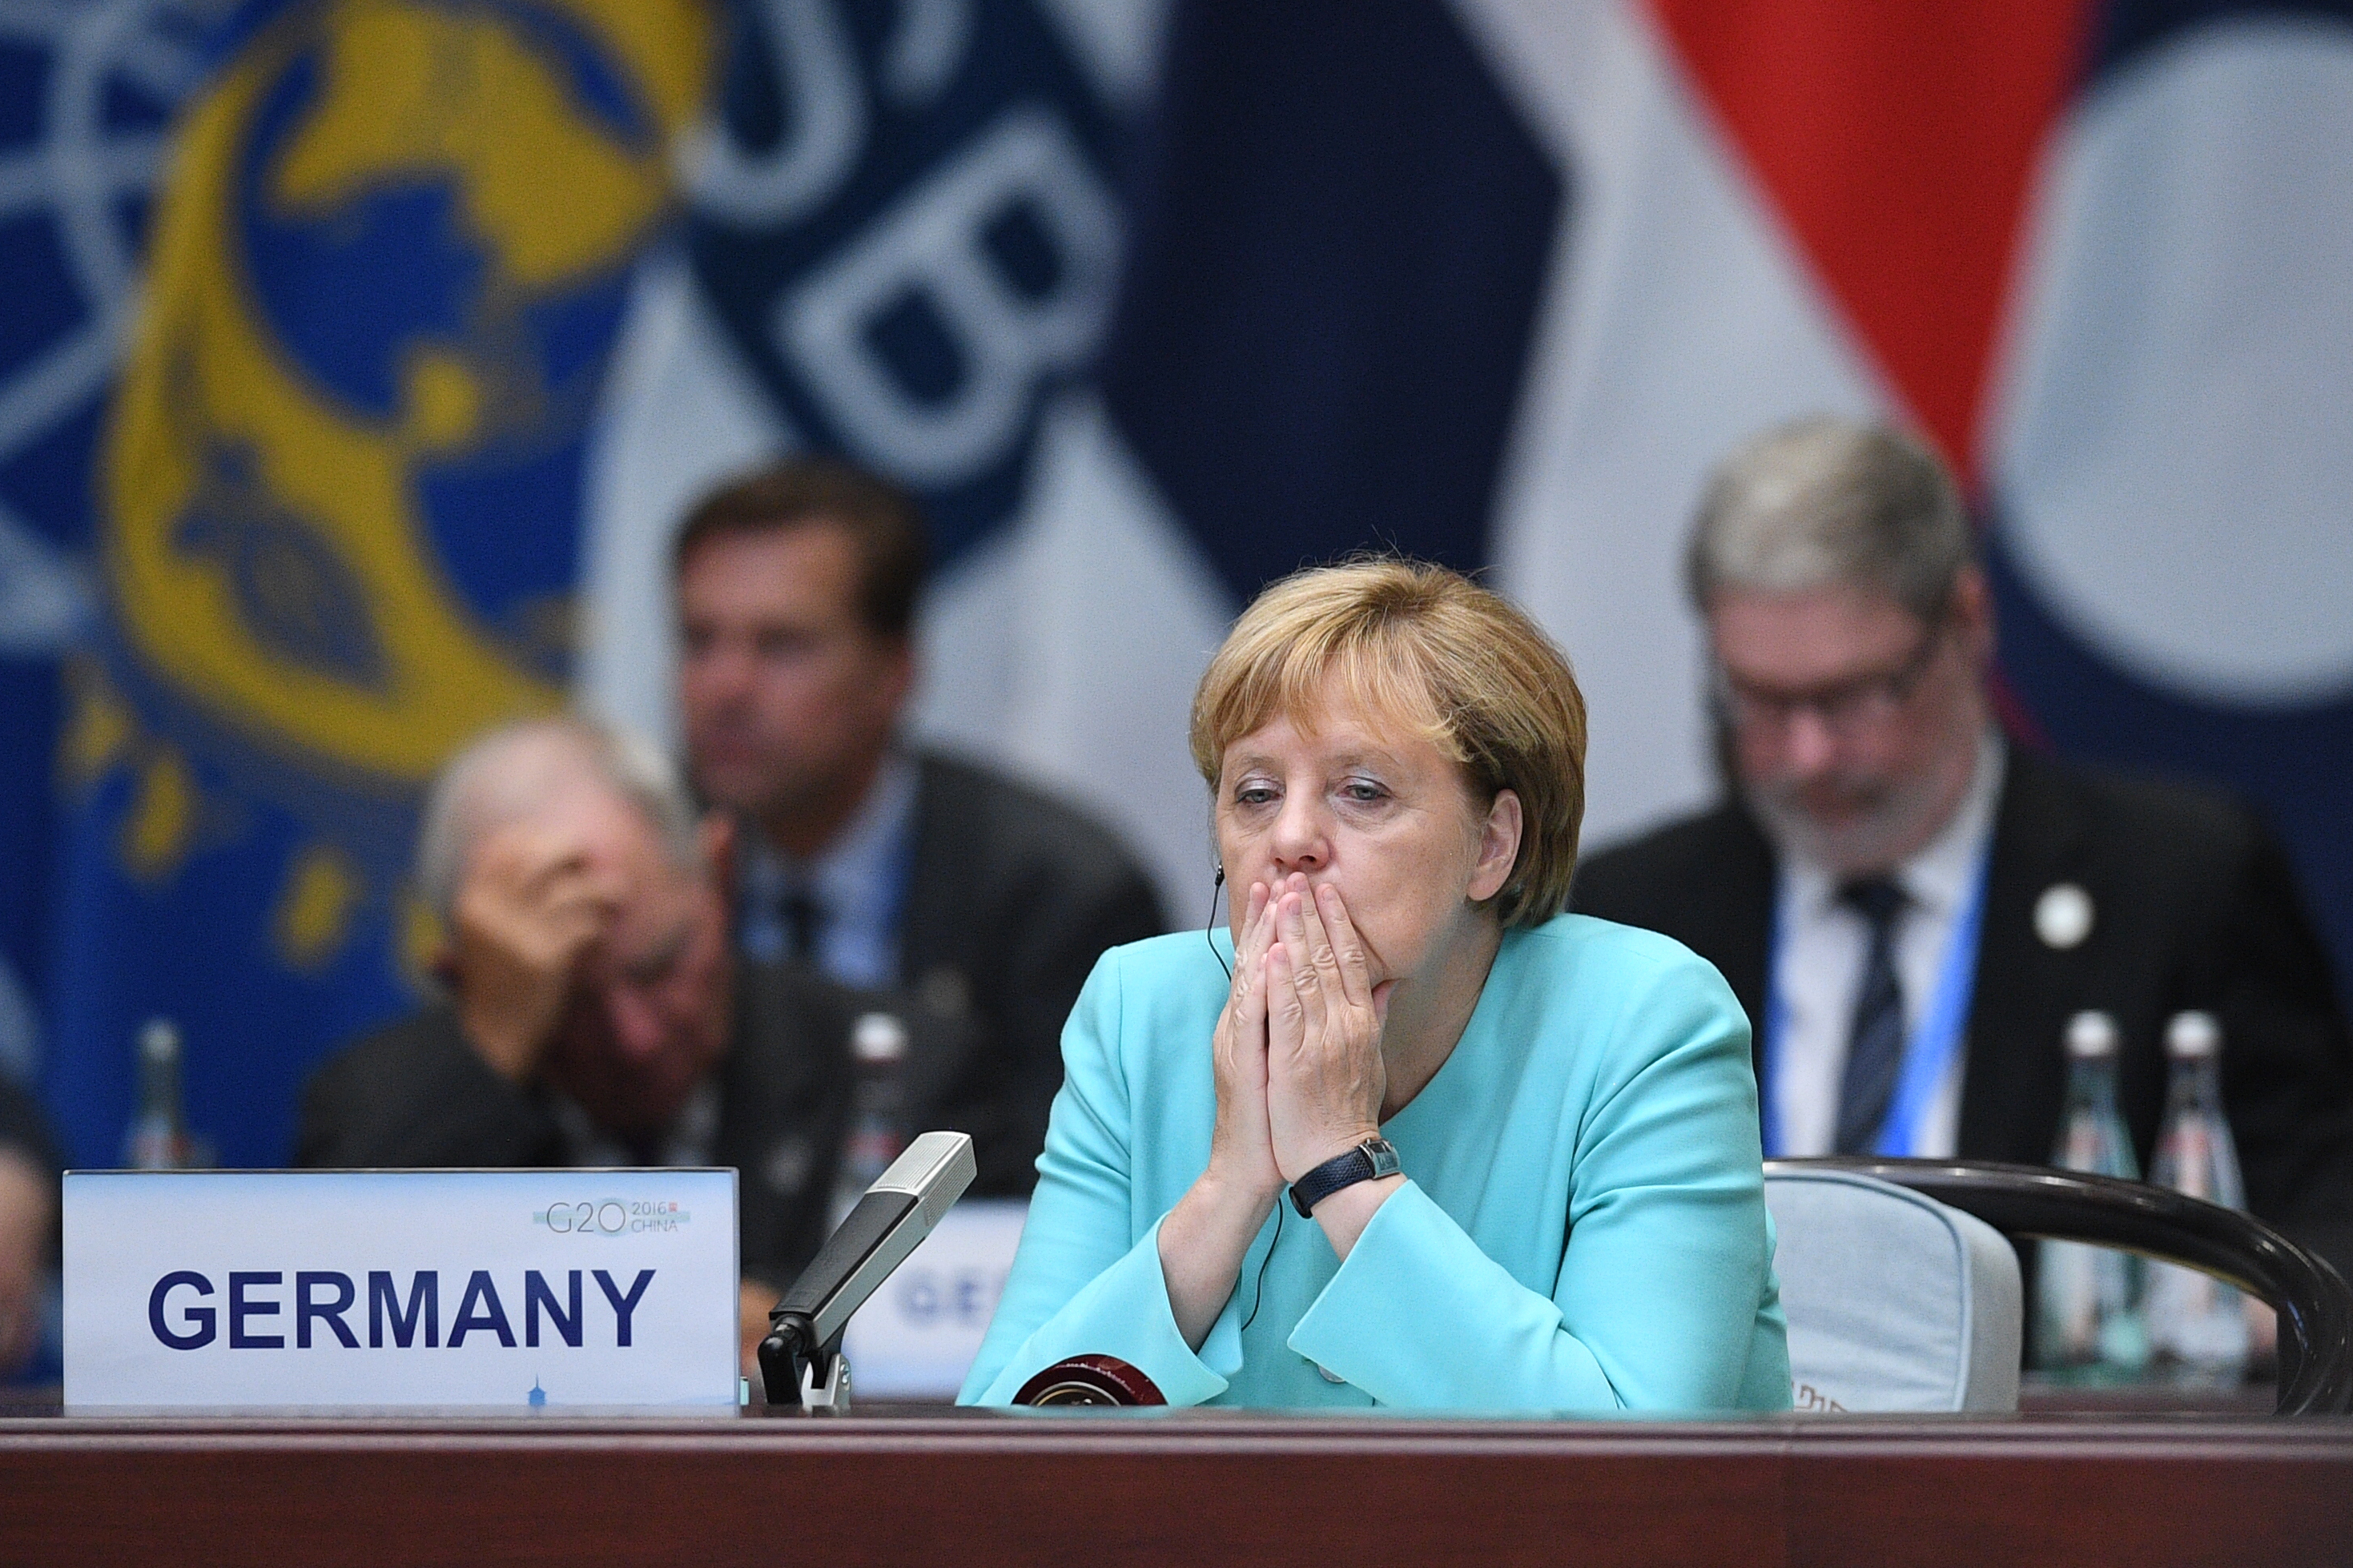 Merkel elismerte, hogy ő is felelős a vasárnapi vereségért, de nem változtat a menekültpolitikáján